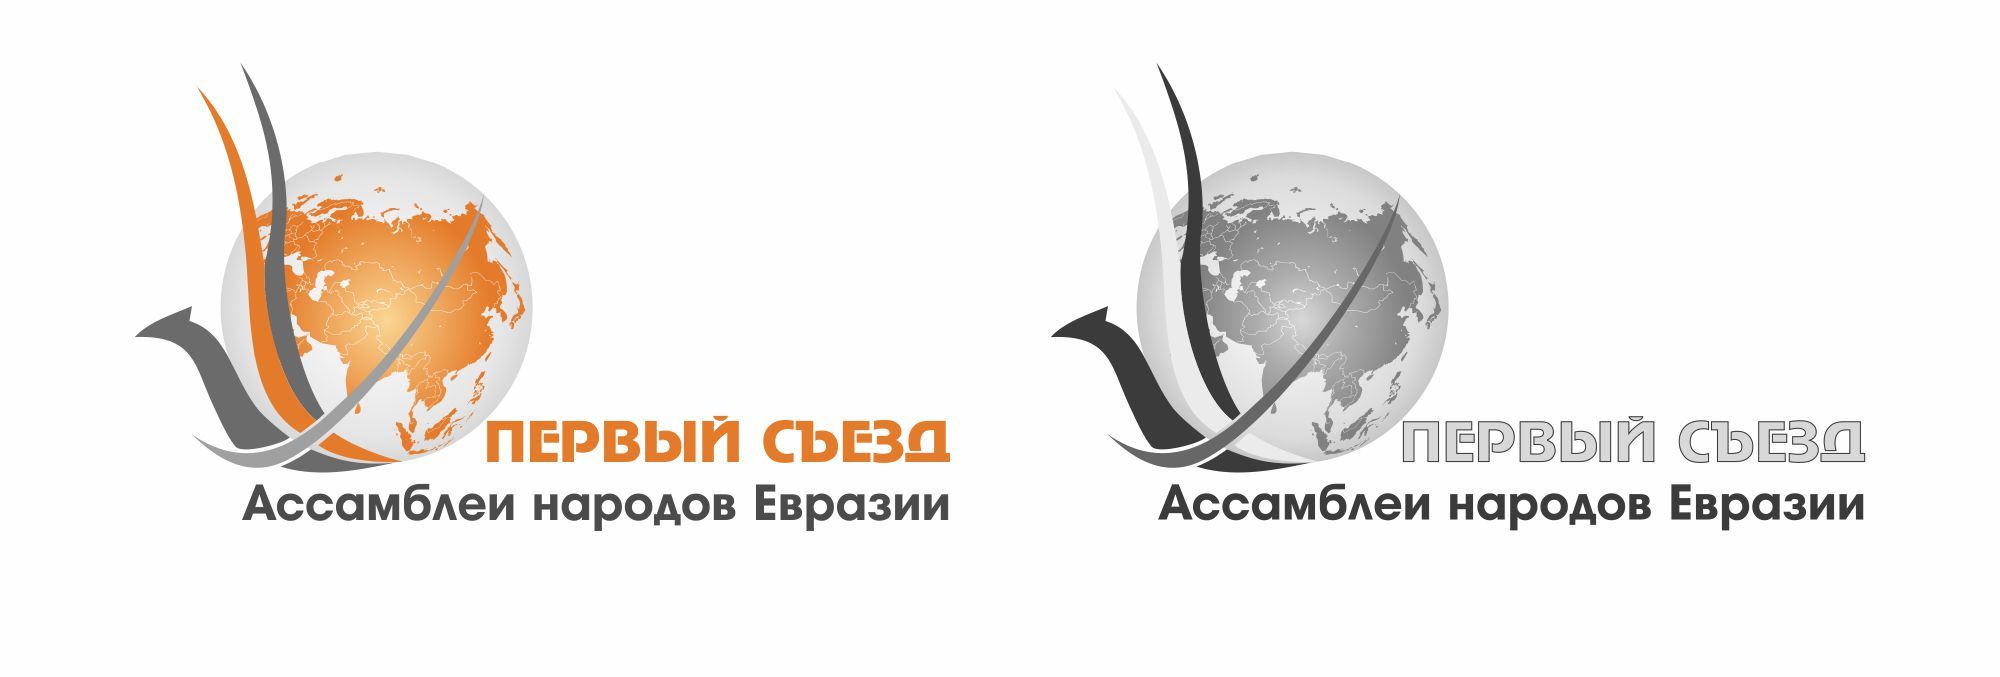 Логотип для I Съезд Ассамблеи народов Евразии - дизайнер Victoire